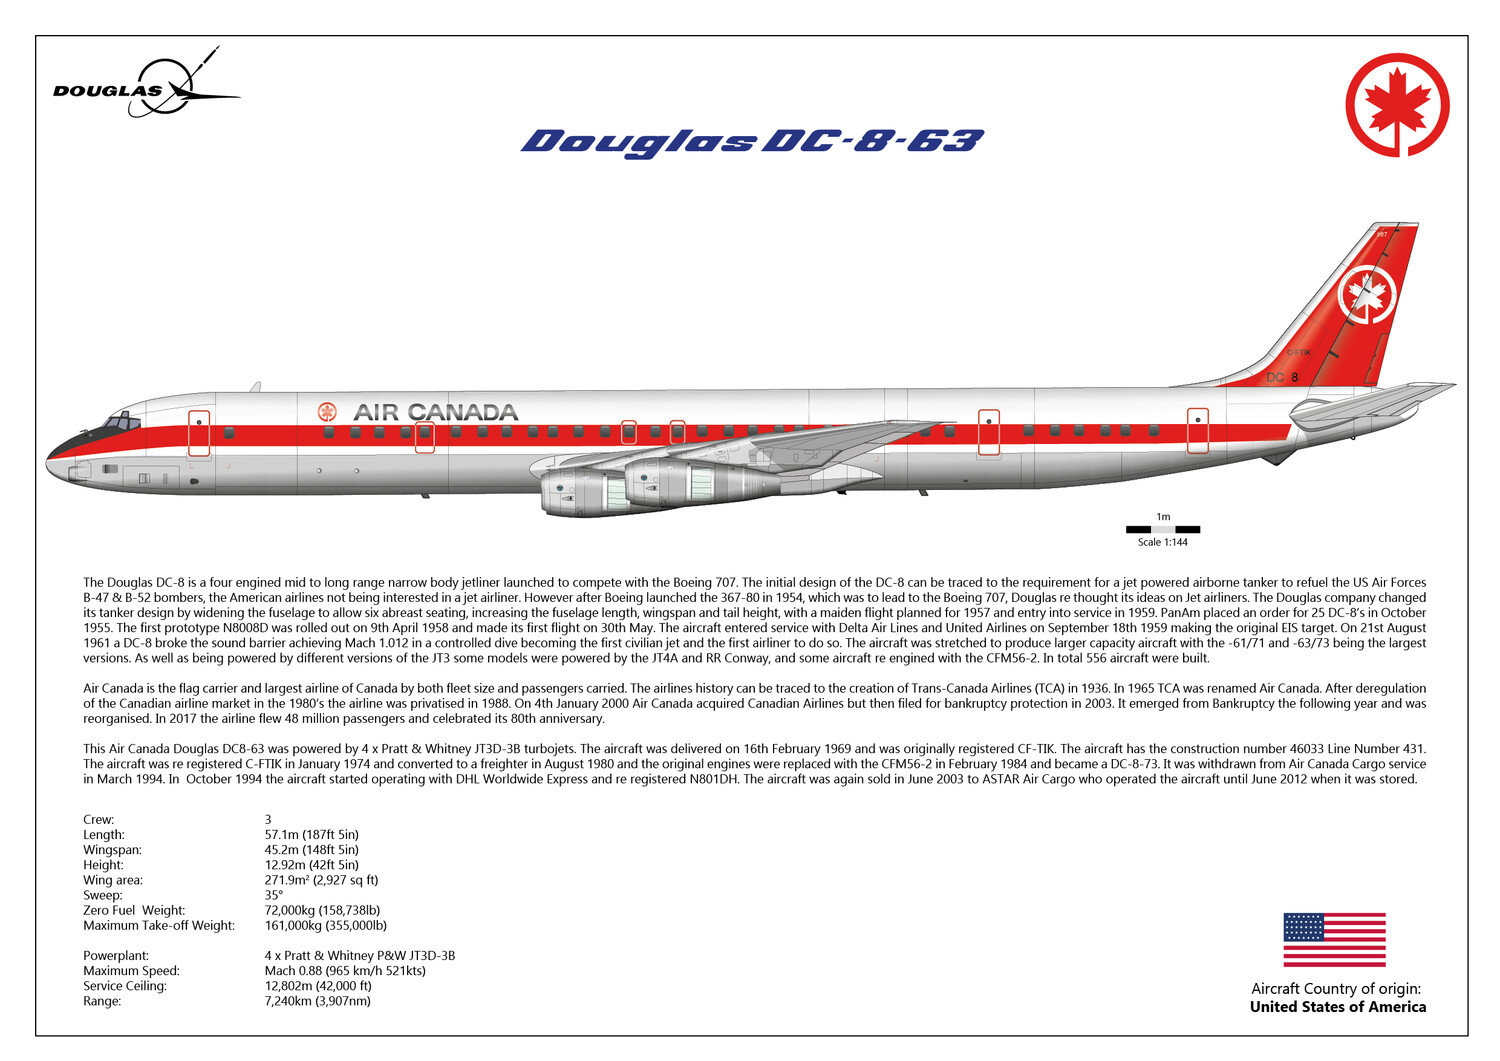 Douglas DC-8-63 of Air Canada